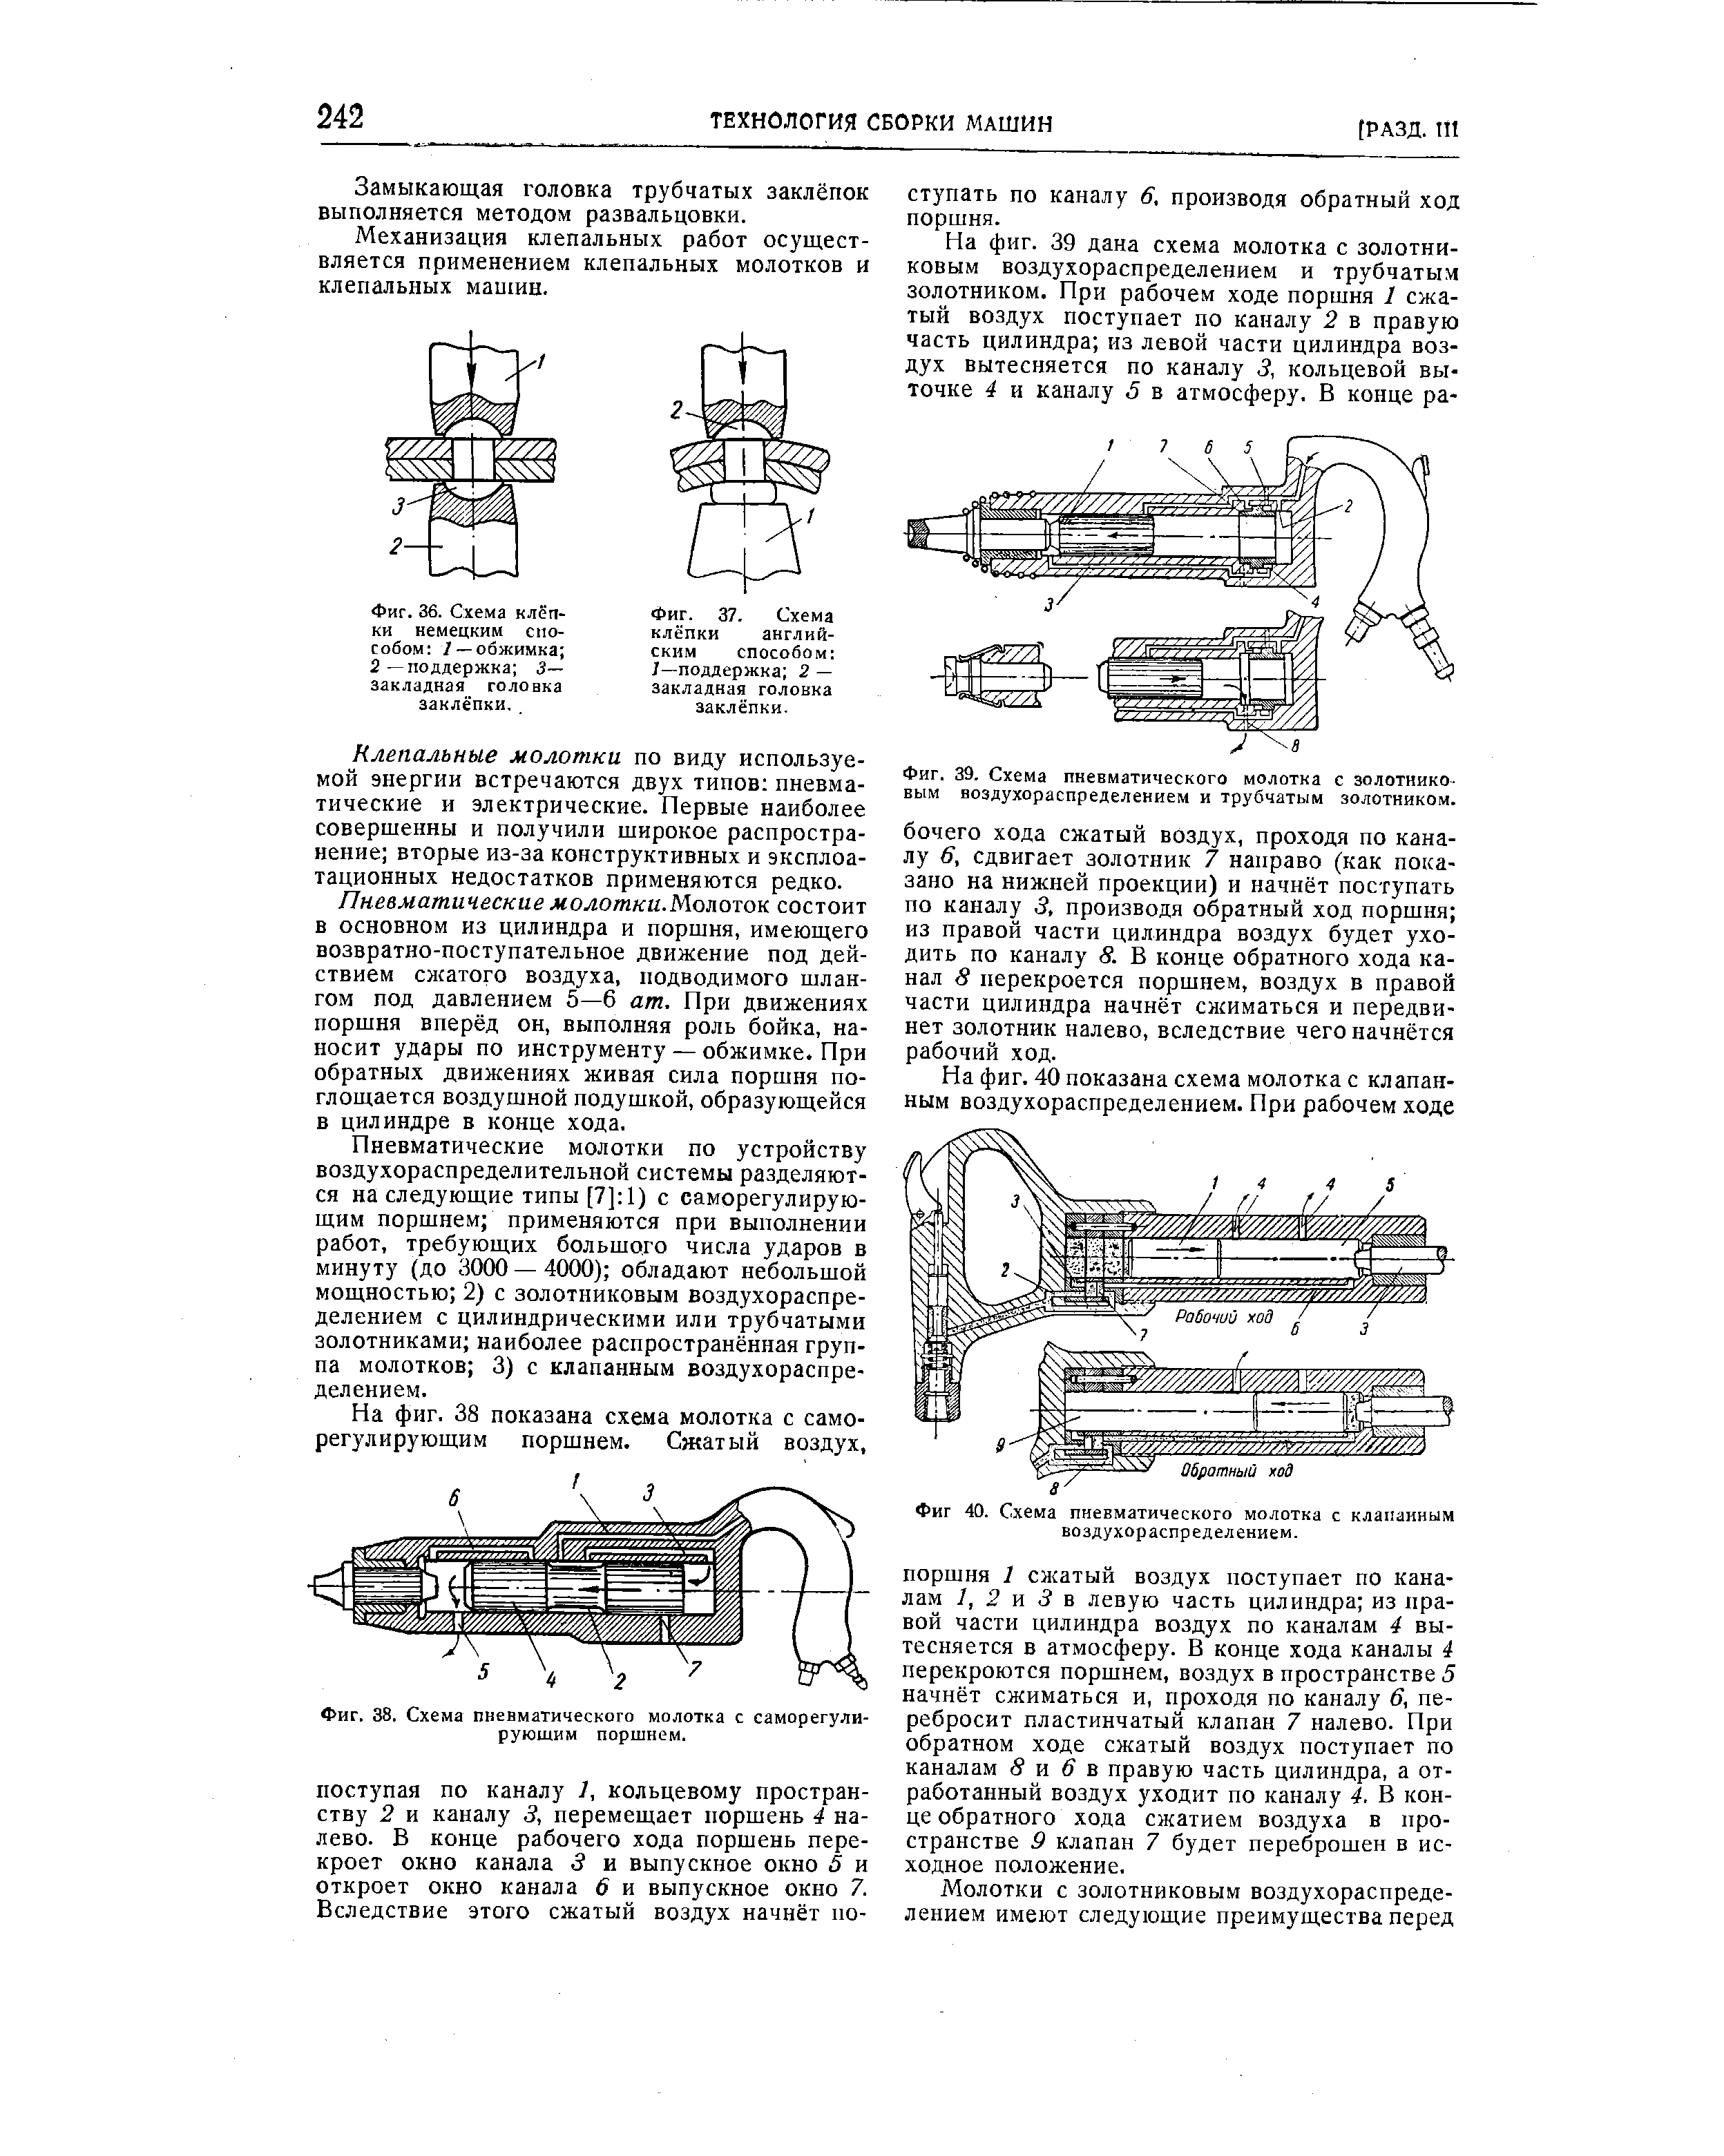 Фиг. 39. Схема пневматического молотка с золотниковым воздухораспределением и трубчатым золотником.
